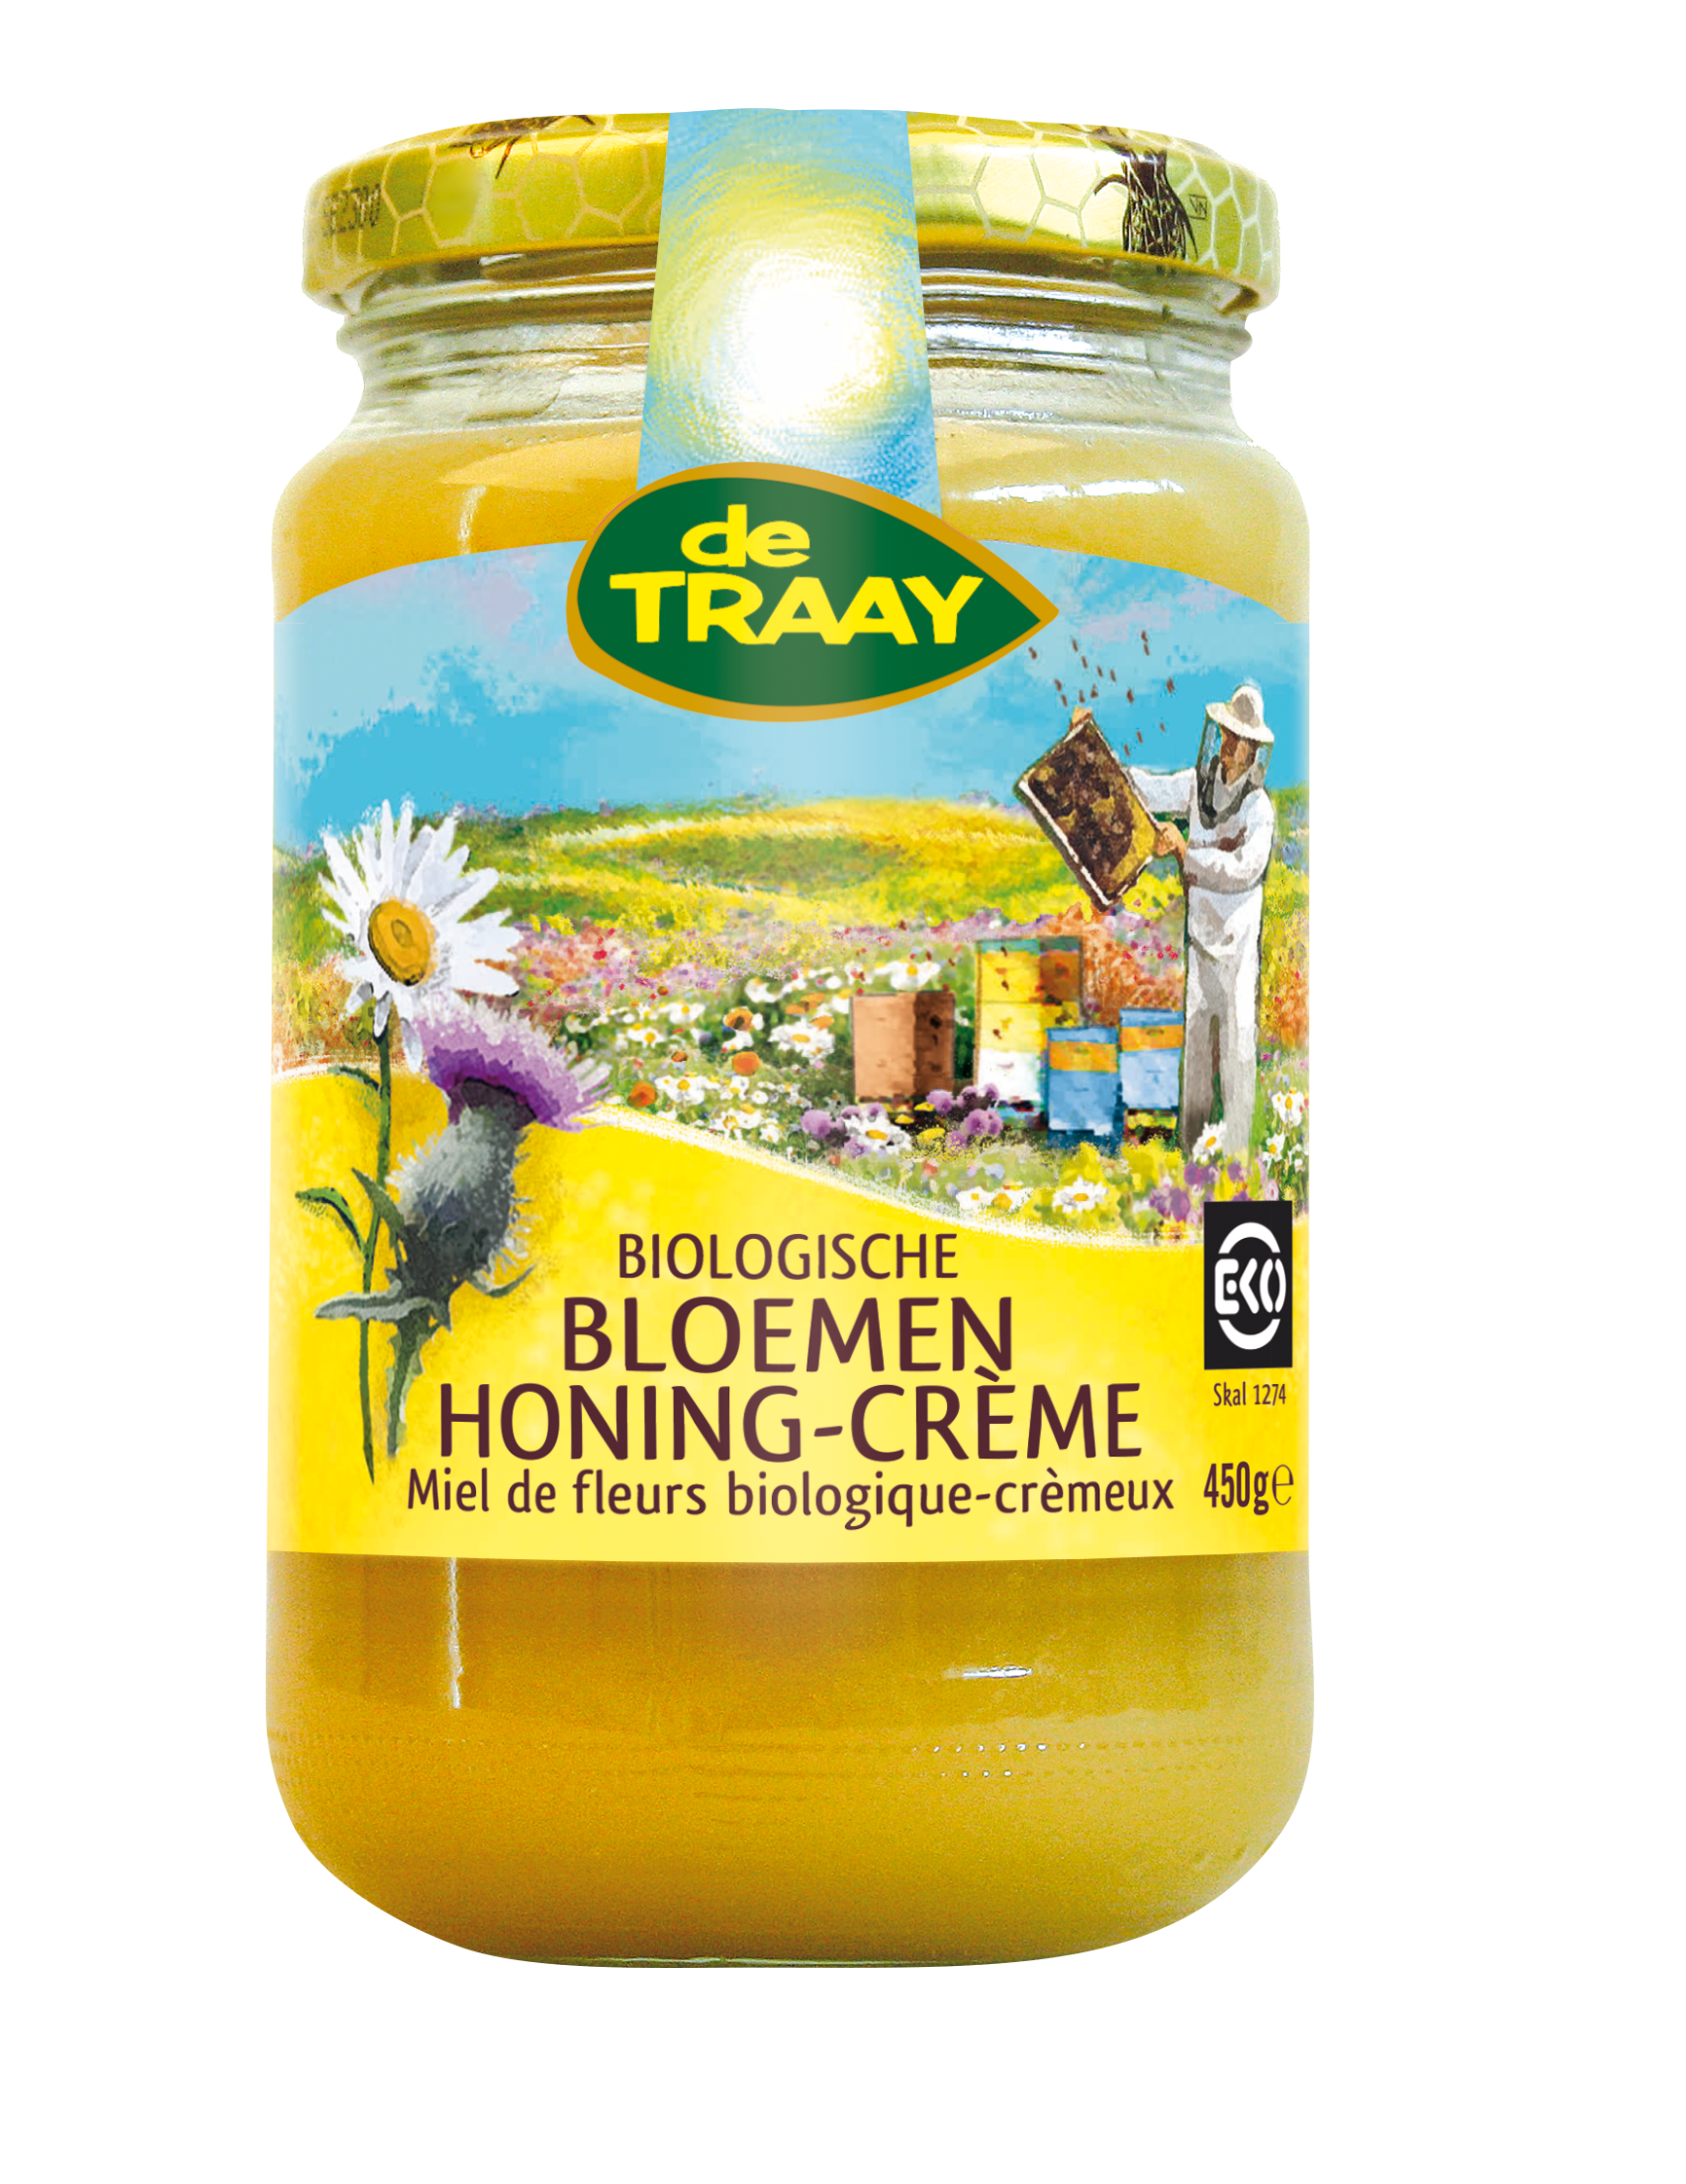 De Traay Miel toutes fleurs crèmeux bio 900g